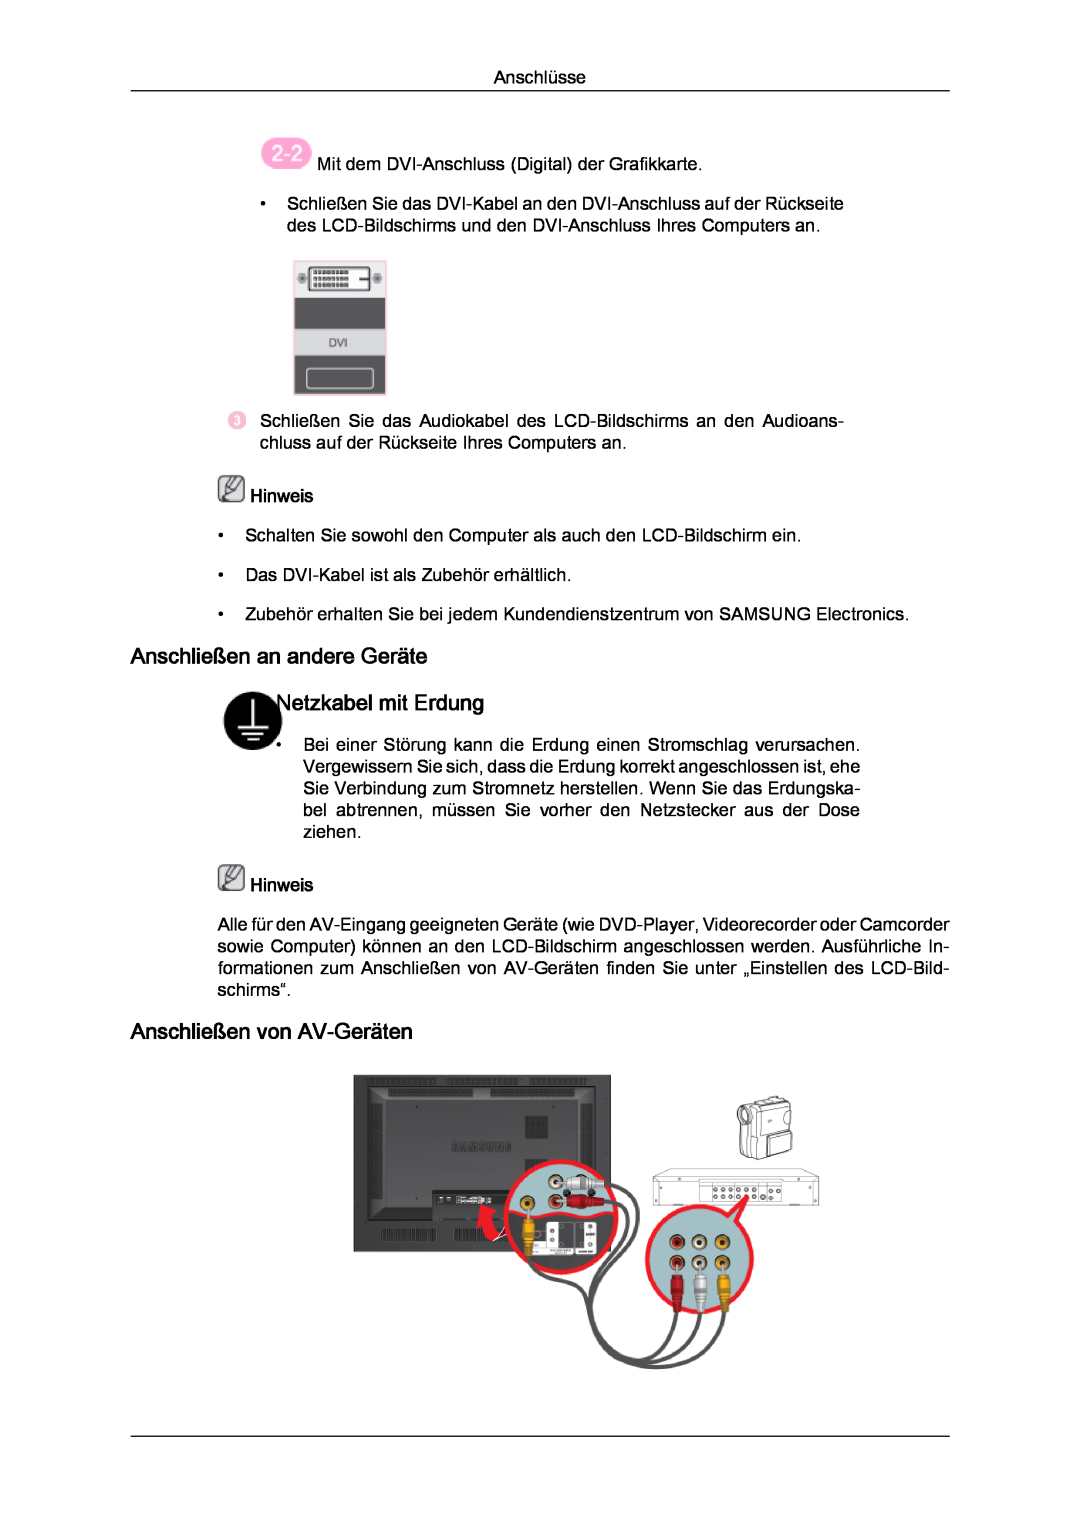 Samsung LH46SOUQSC/EN manual Anschließen an andere Geräte Netzkabel mit Erdung, Anschließen von AV-Geräten, Hinweis 